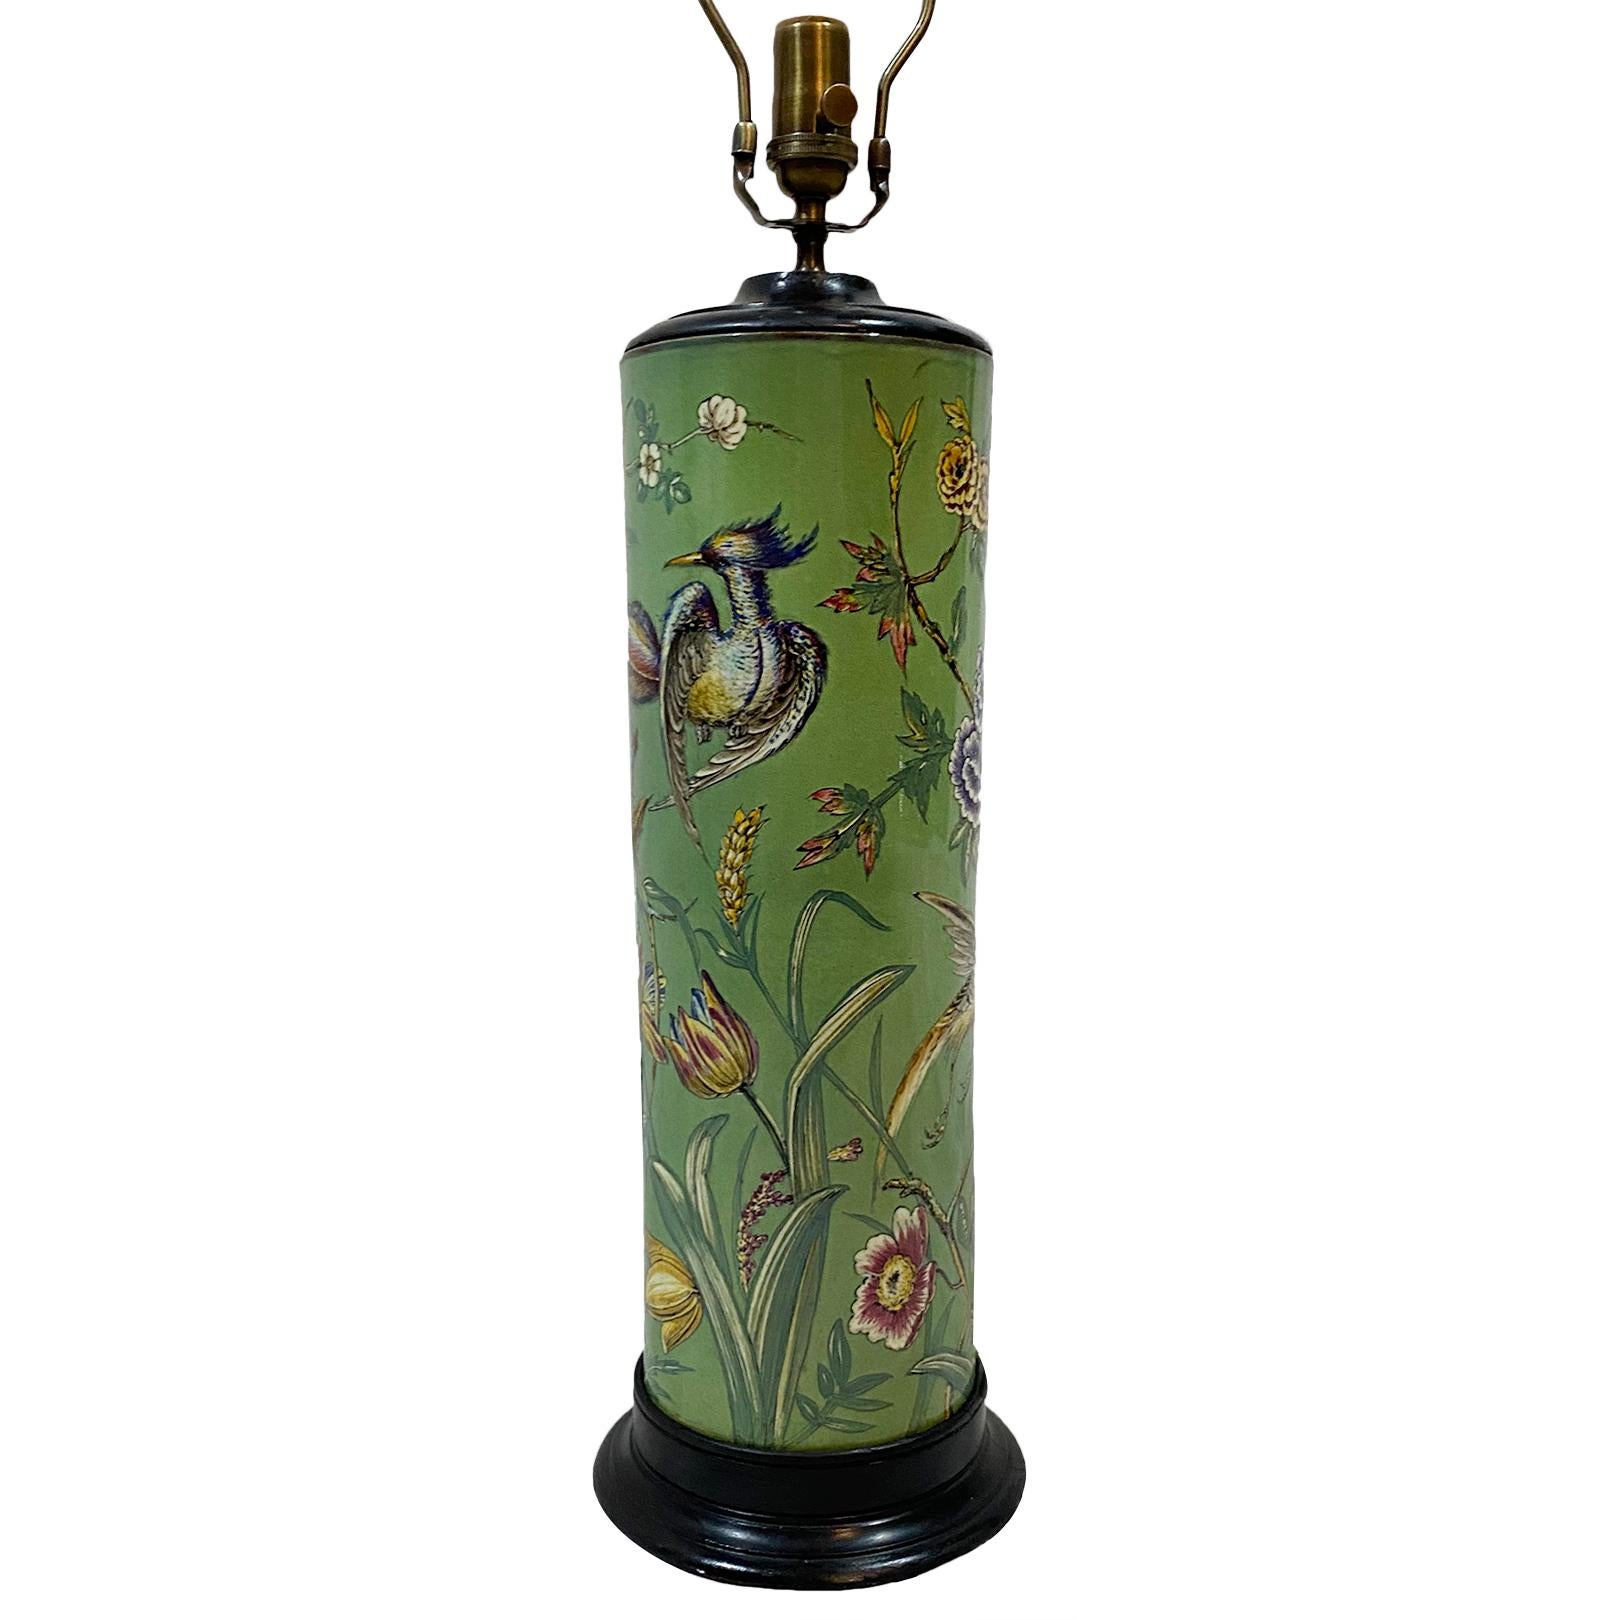 Lampe de table ancienne des années 1950 en porcelaine verte émaillée anglaise avec une décoration florale et d'oiseaux peinte à la main.

Mesures :
Hauteur du corps : 21.5
Hauteur jusqu'à l'appui de l'abat-jour : 29.5